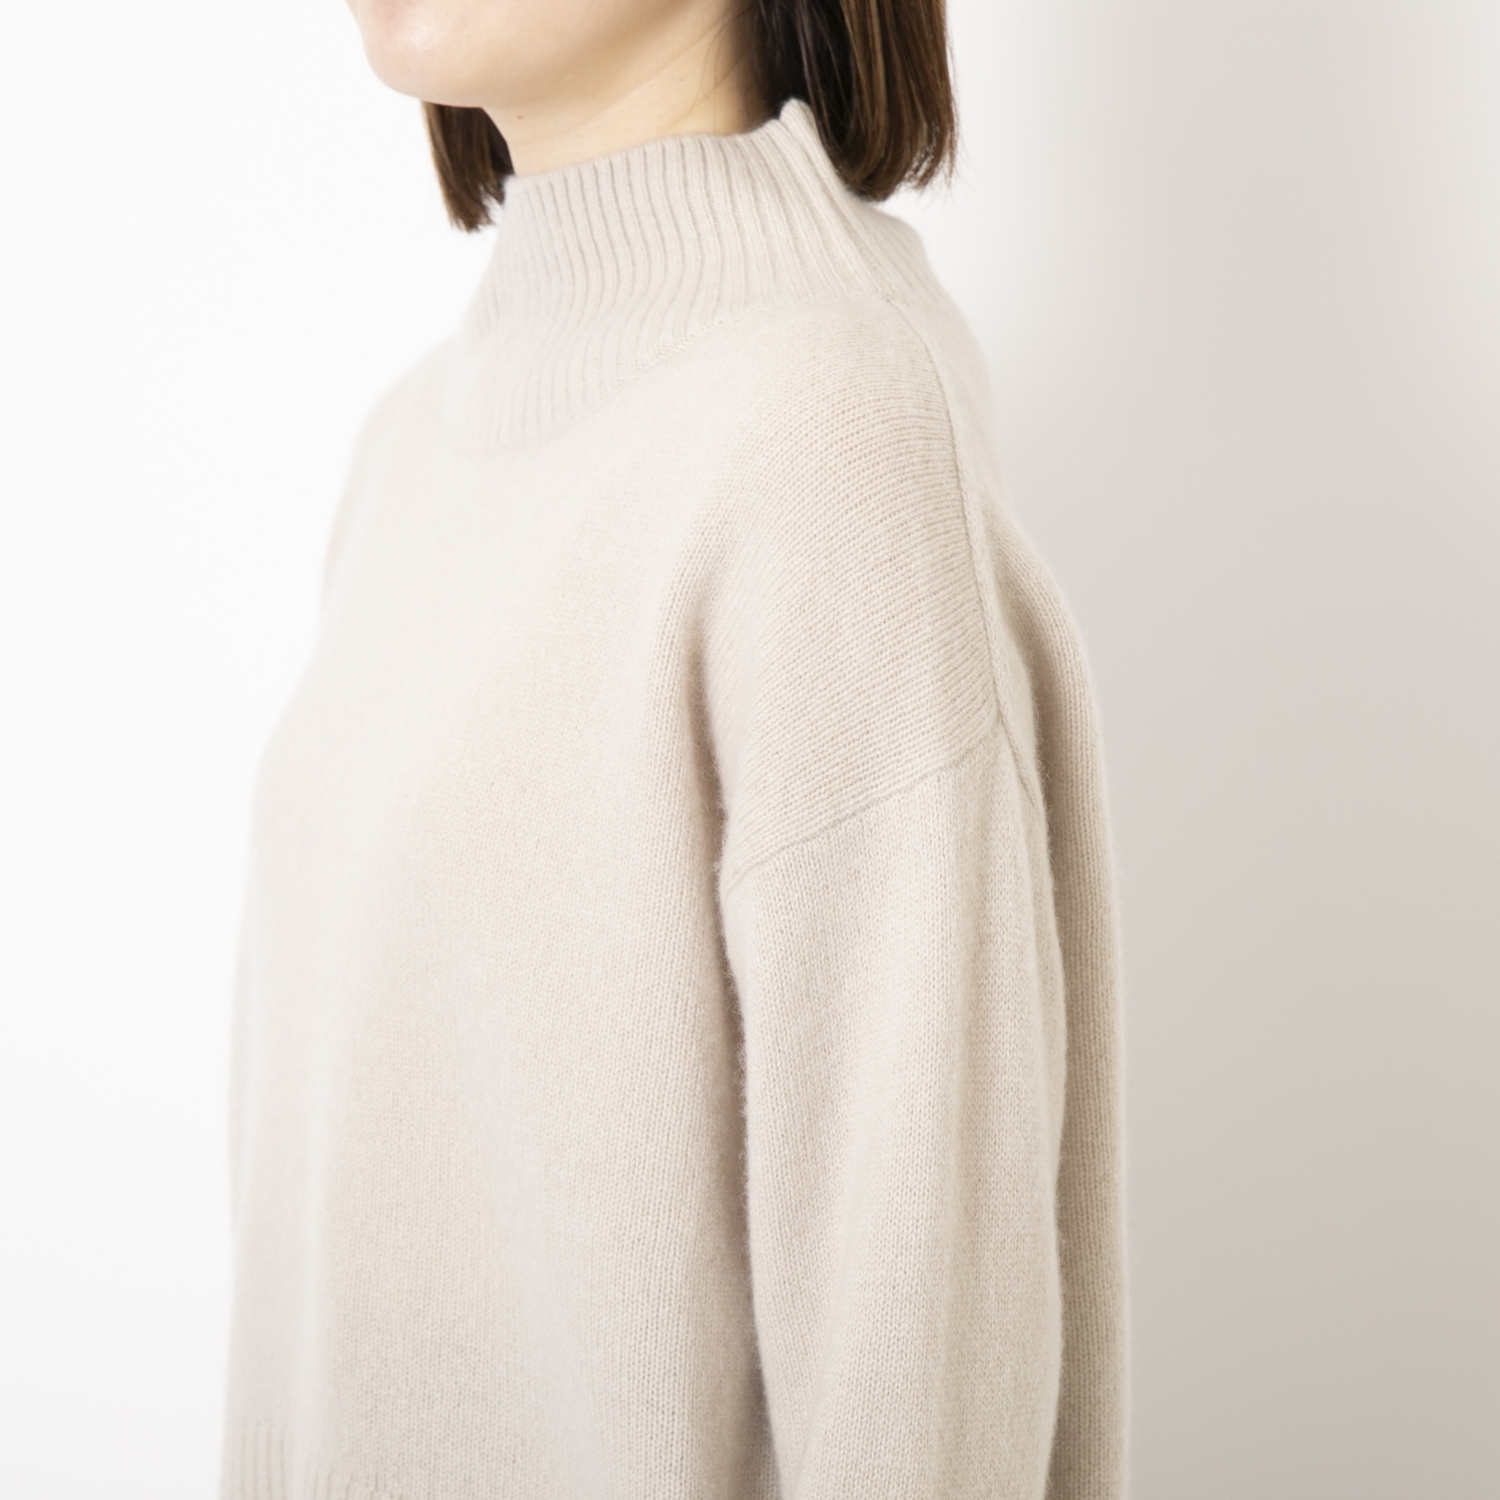 DRESS HERSELF/カシミヤハイネックセーター -デザインもこだわりぬいた、極上な着心地のカシミヤセーター スタイルストア